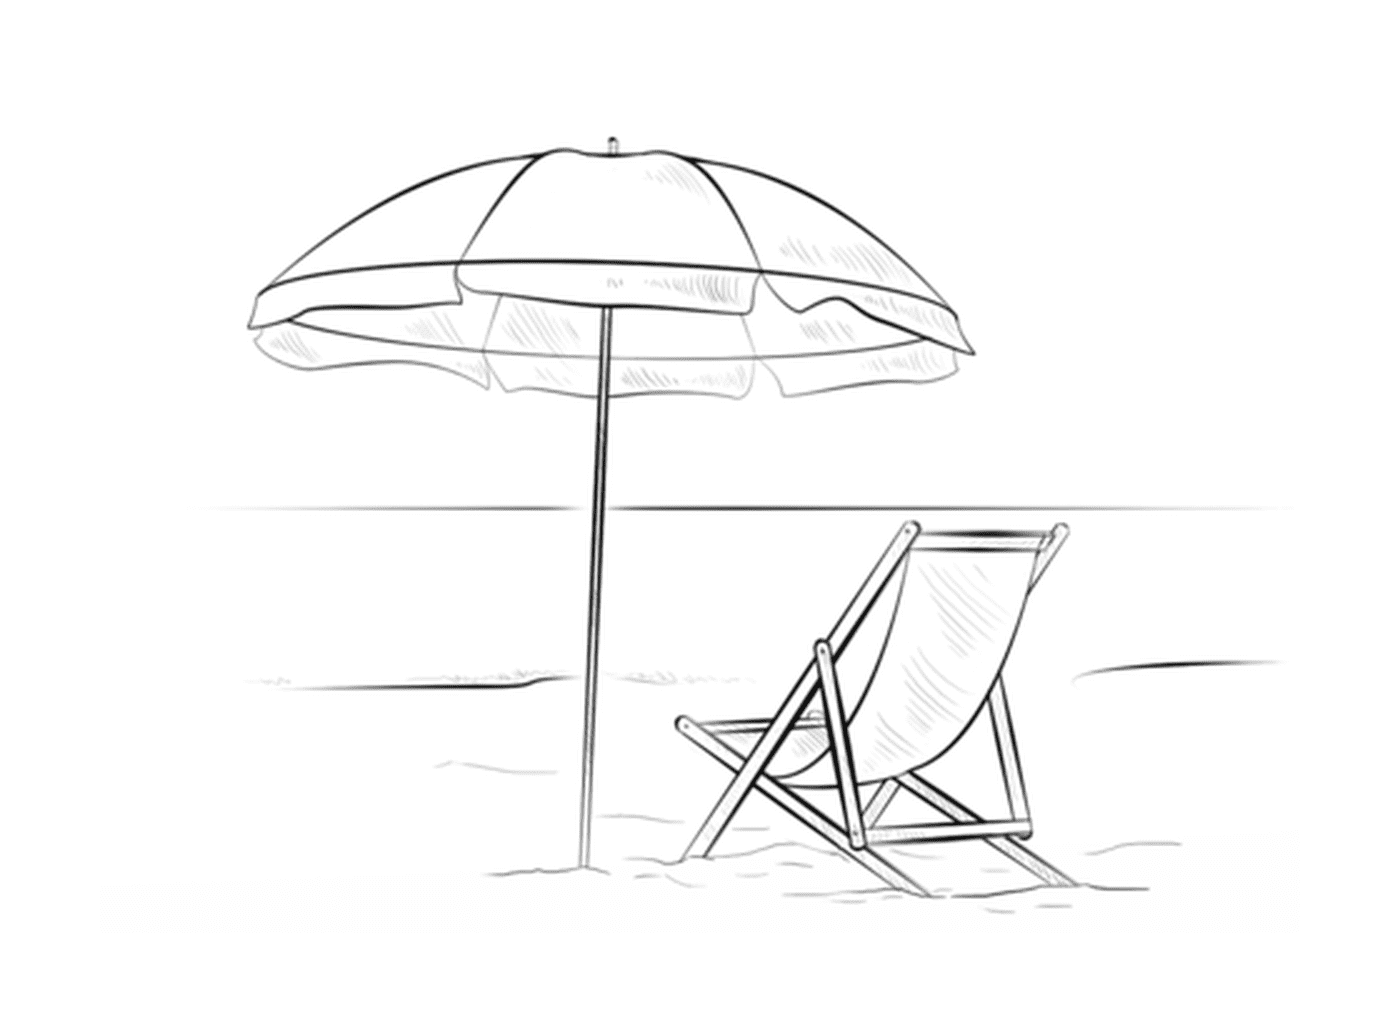  Um guarda-sol com uma cadeira de praia durante as férias de verão 